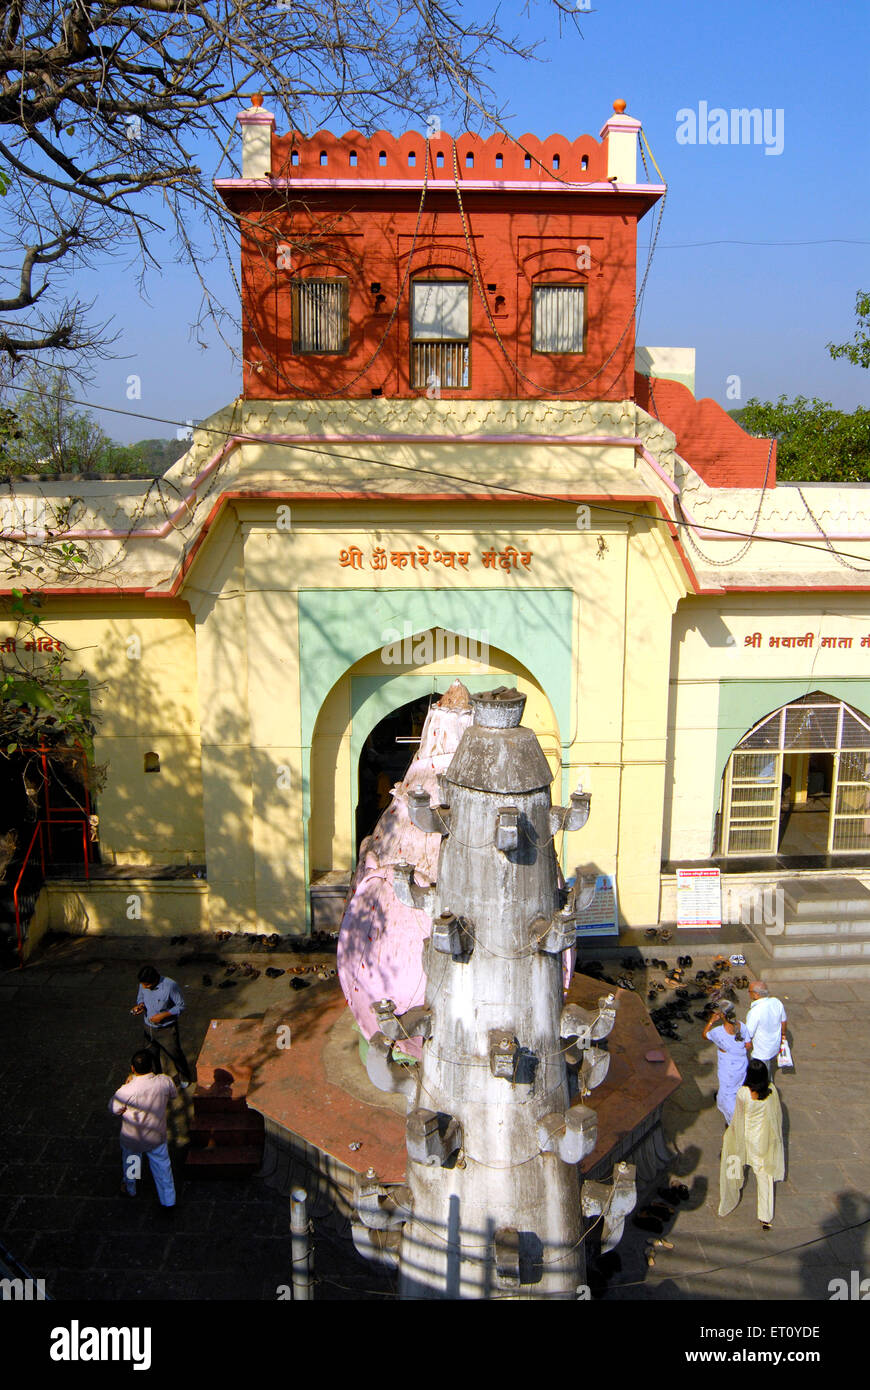 Shree Omkareshwar Mandir, alter shiva-Tempel, Pune, Maharashtra, Indien Stockfoto